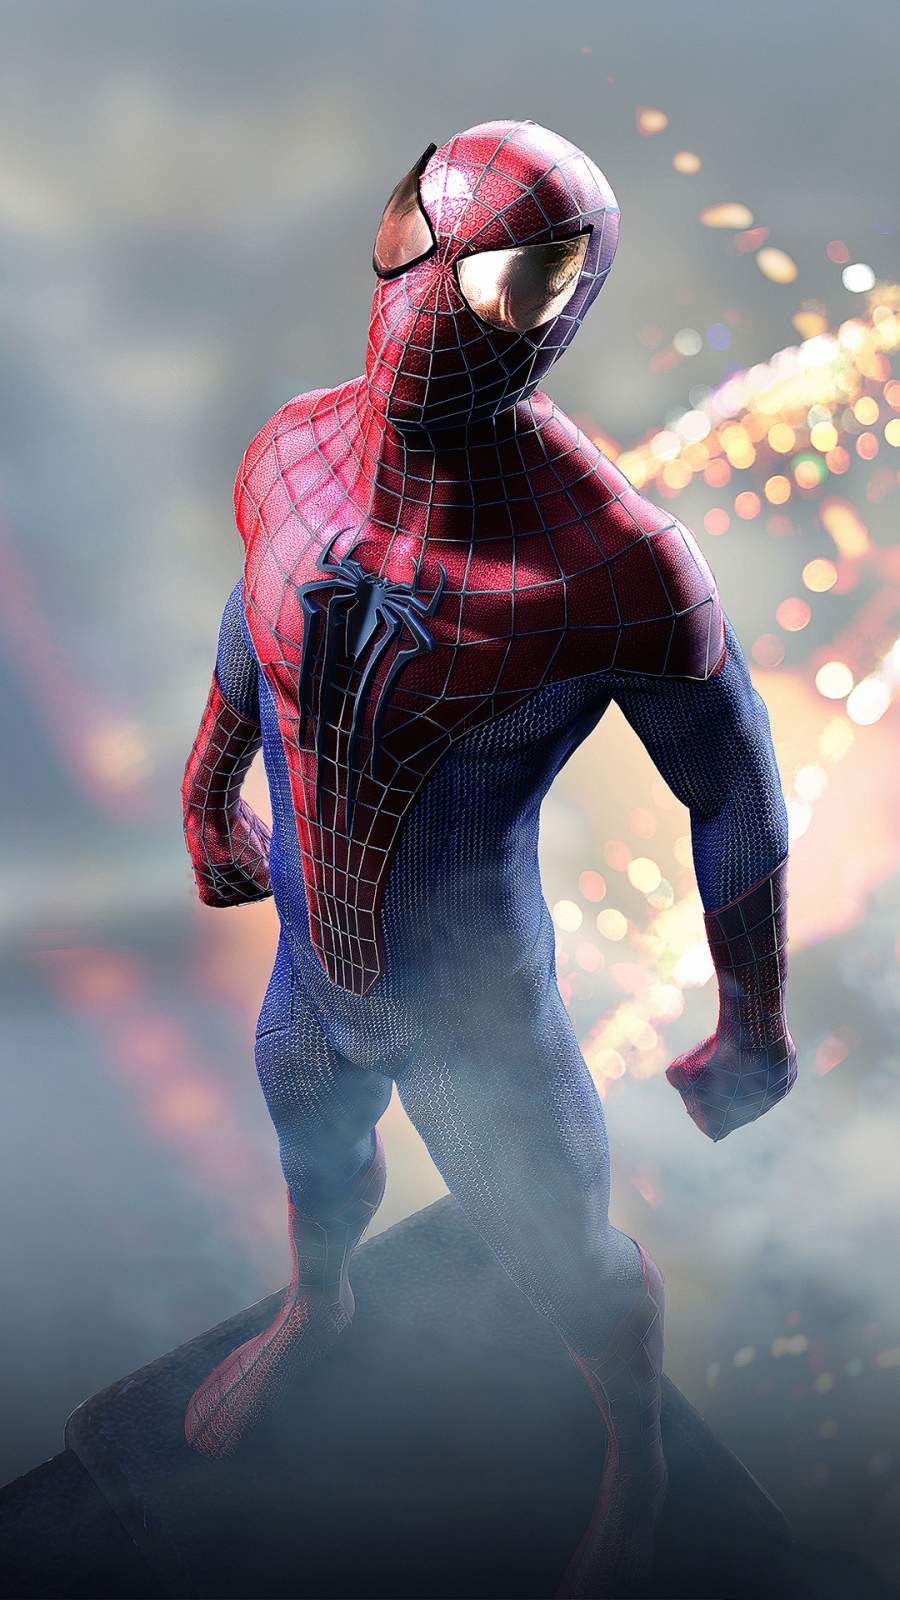 Spider Man 4K iPhone Wallpaper. Marvel spiderman, Spiderman, Amazing spider